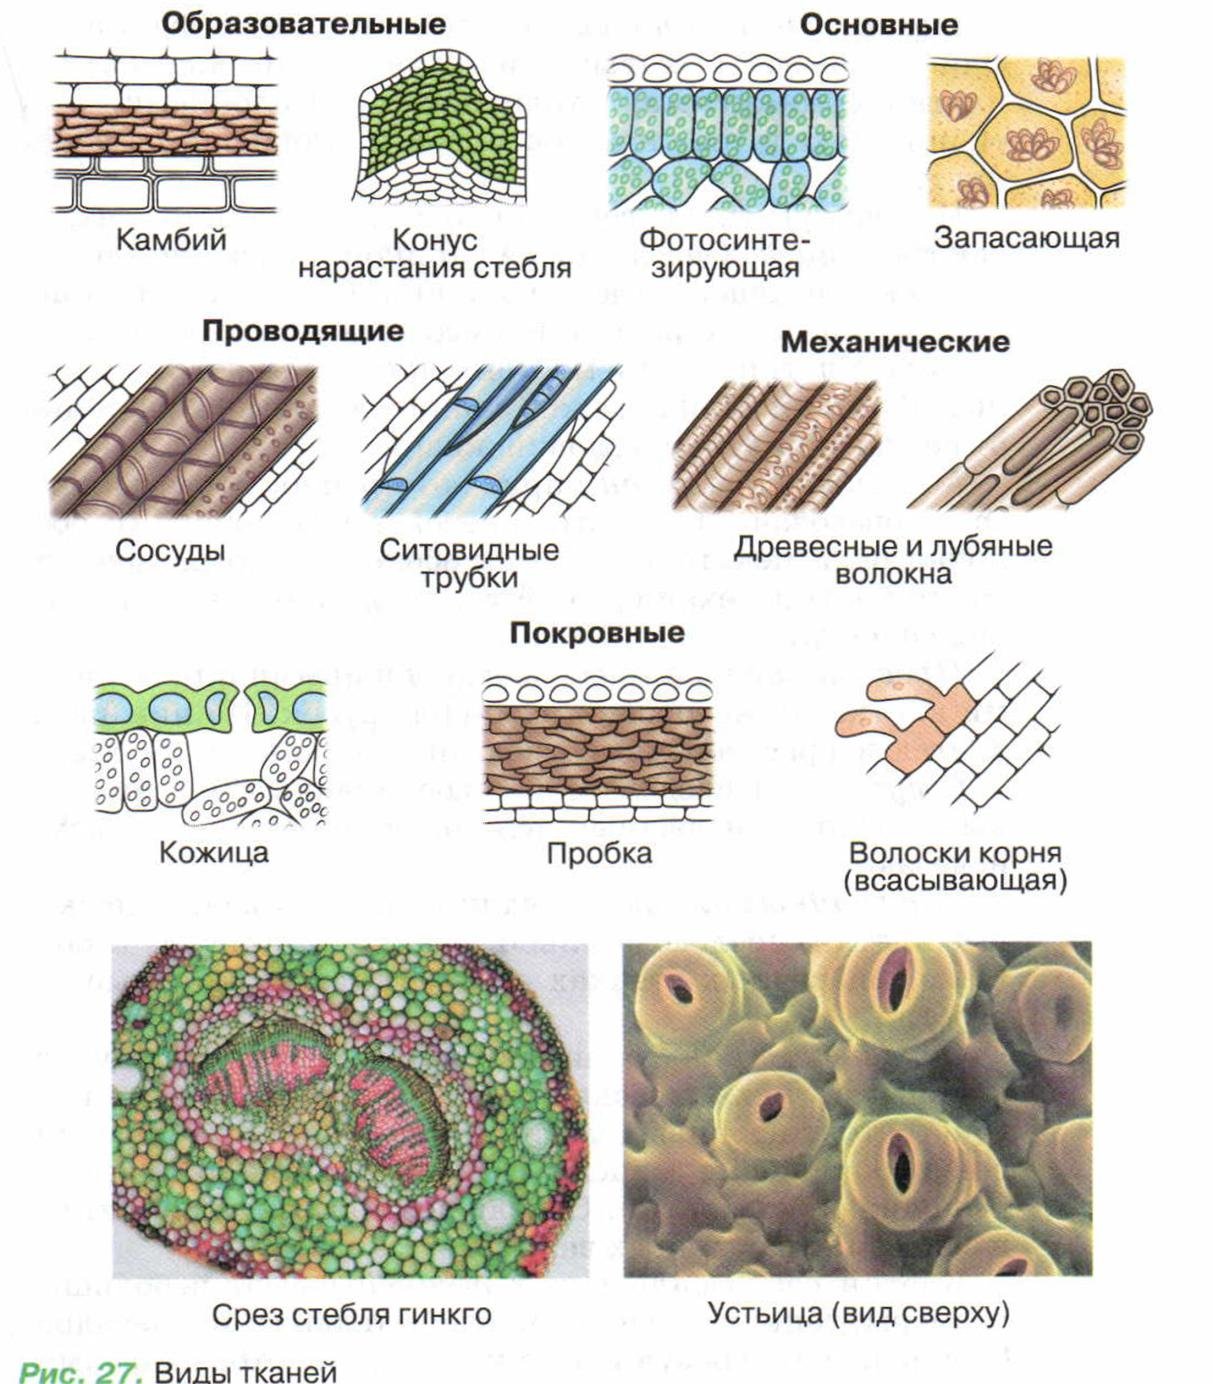 У каких растений 5 тканей. Строение растительных тканей 6 класс биология. Клеточное строение основной ткани растений. Схема растительной ткани биология. Типы тканей растений и их функции.